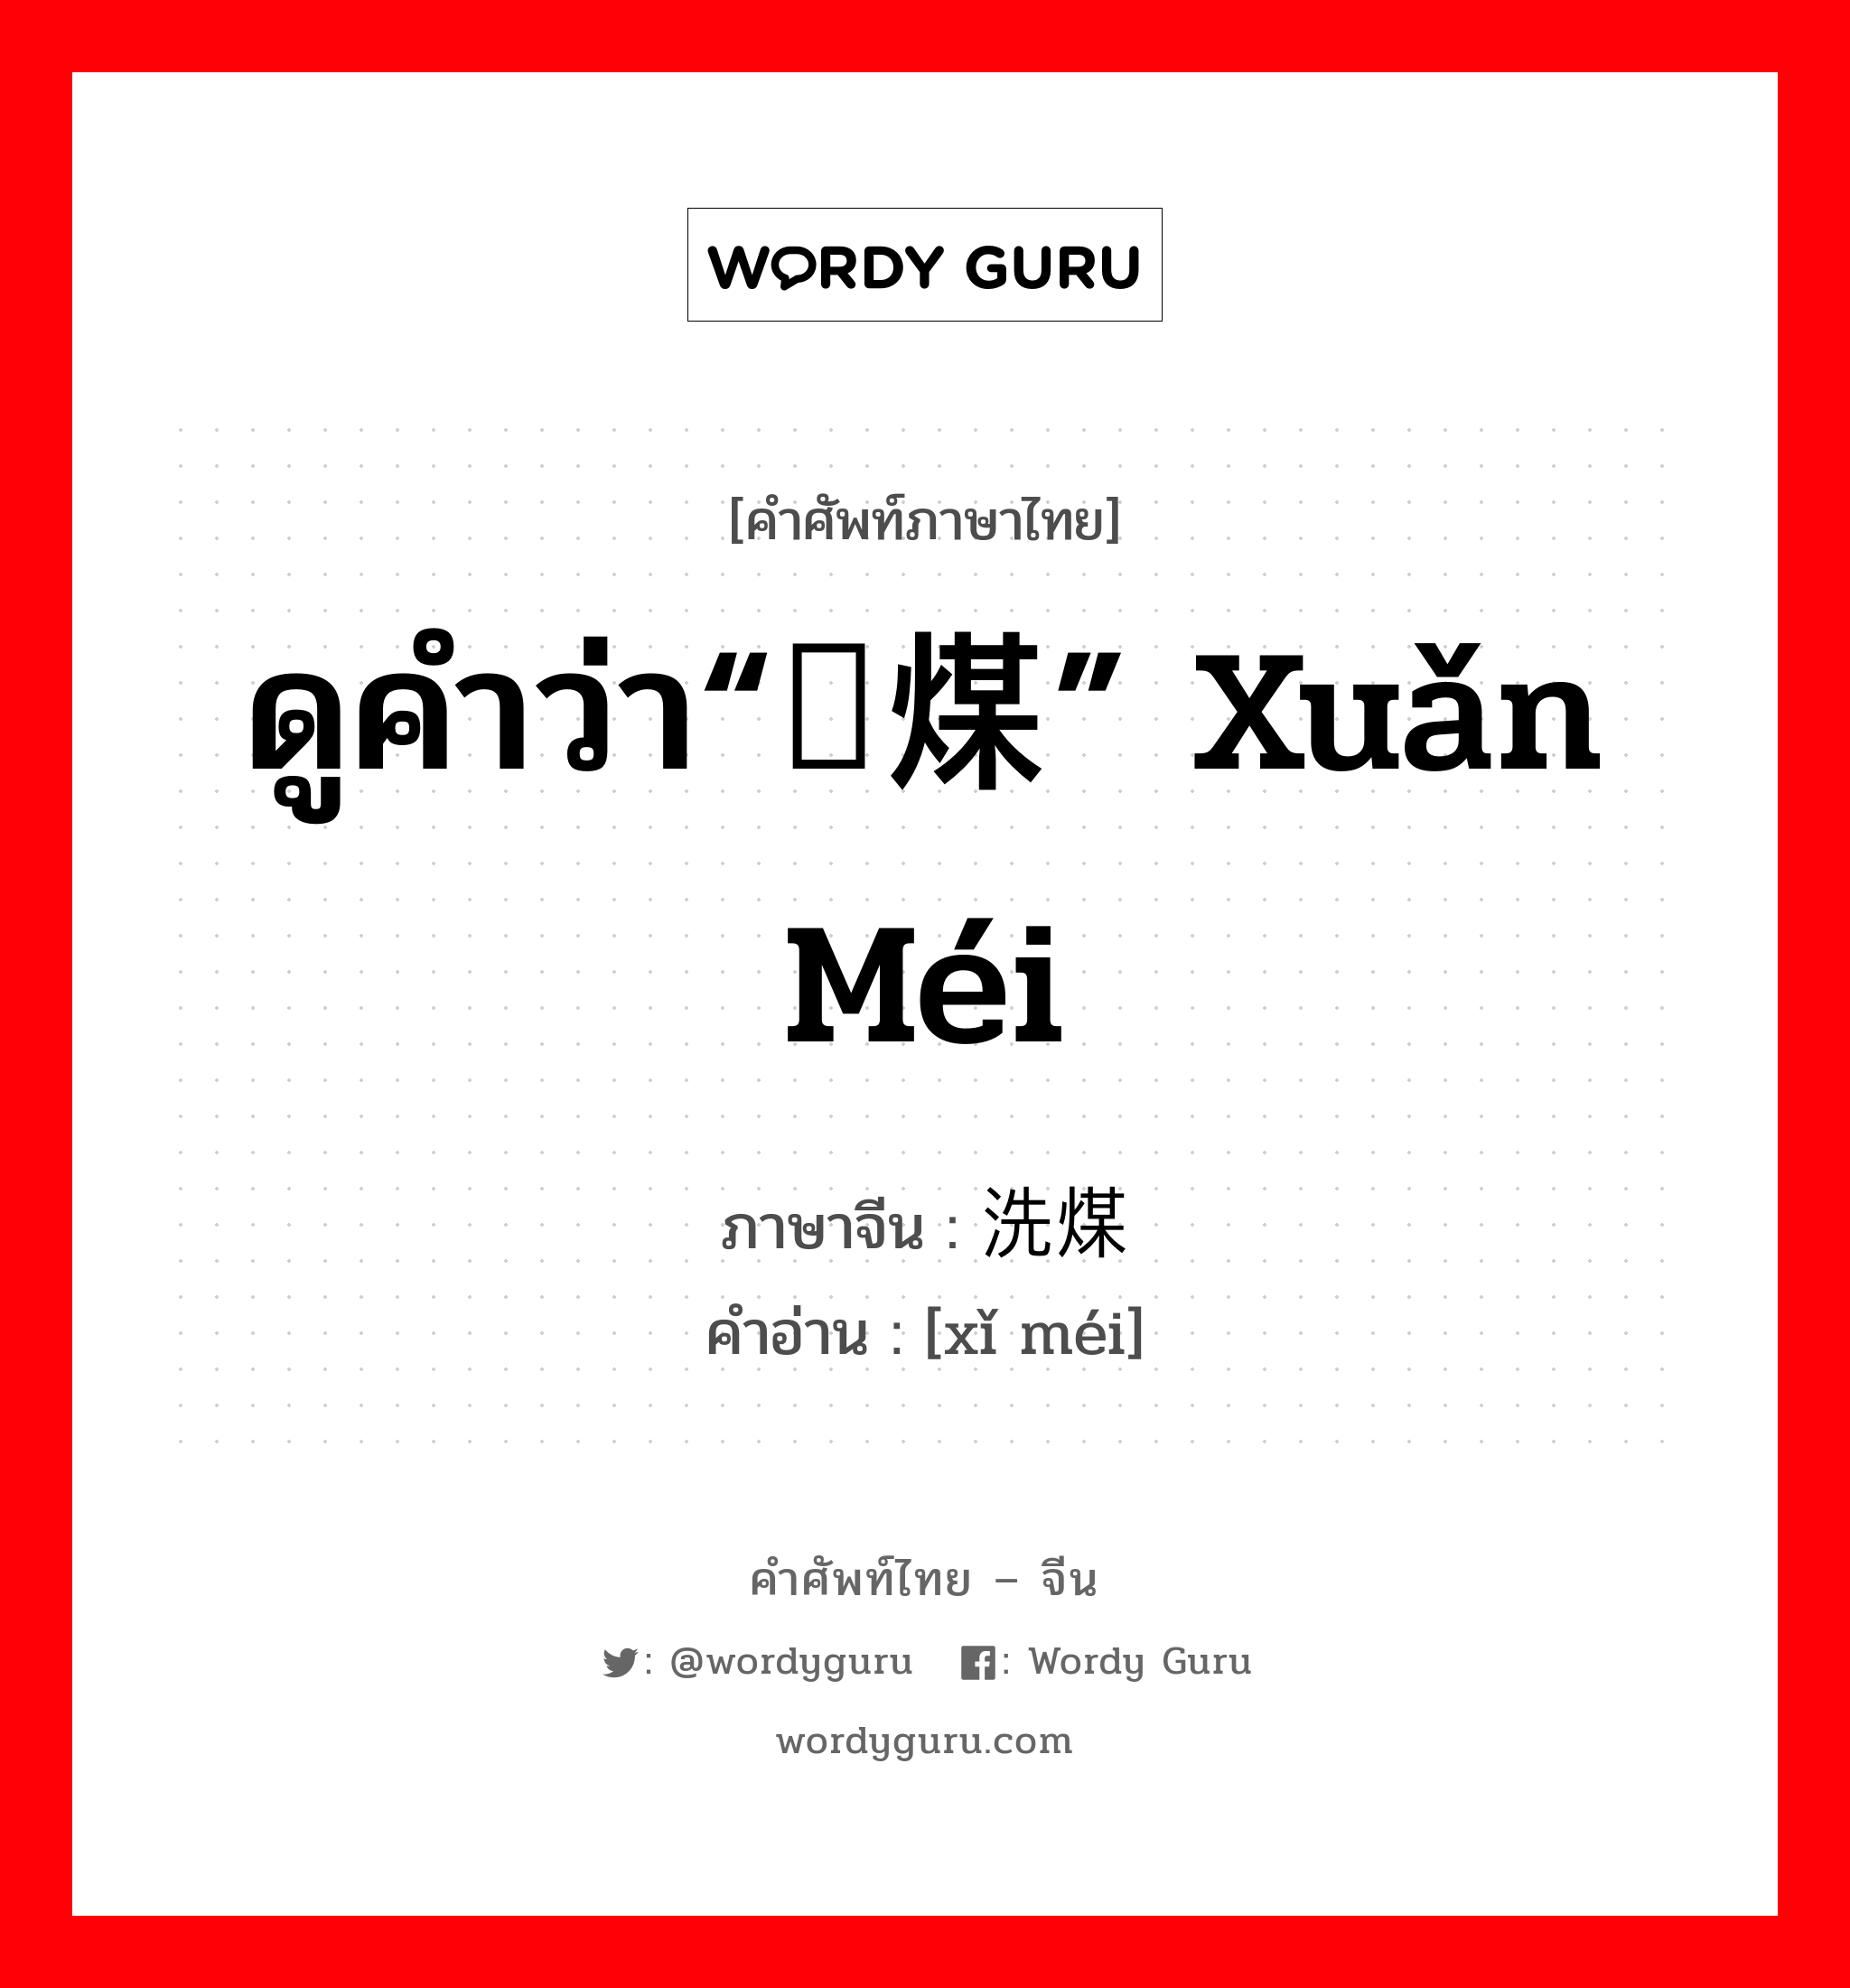 ดูคำว่า“选煤” xuǎn méi ภาษาจีนคืออะไร, คำศัพท์ภาษาไทย - จีน ดูคำว่า“选煤” xuǎn méi ภาษาจีน 洗煤 คำอ่าน [xǐ méi]